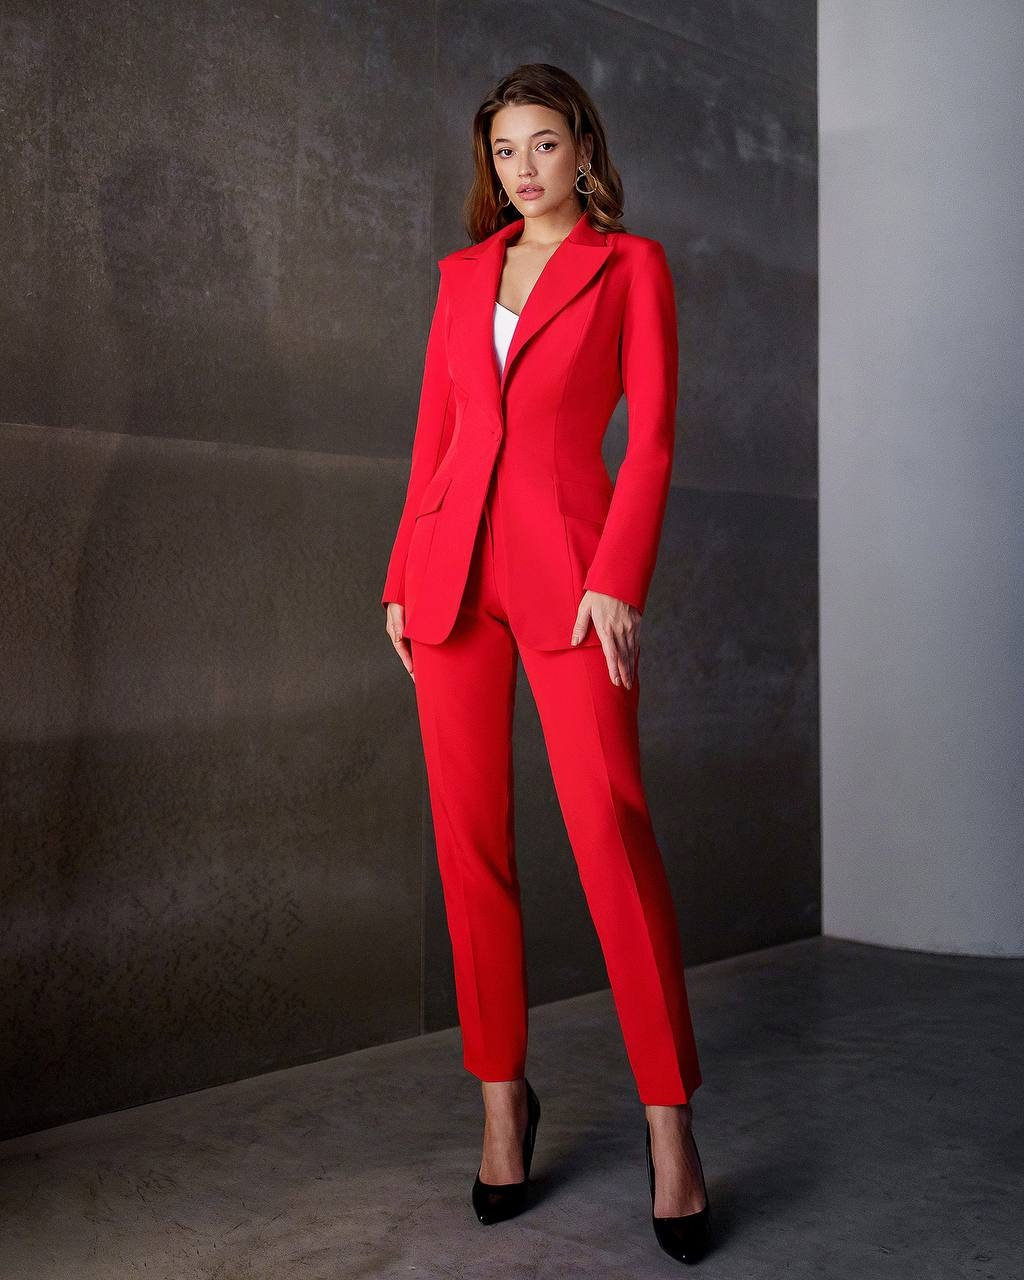 Women Suit, Red Women Suit, Women Suit Set, Women Business Suit, Dressy Red  Suit, Red Suit Women, Pant Suit Women, Red Pant Suit, Formal Sui 